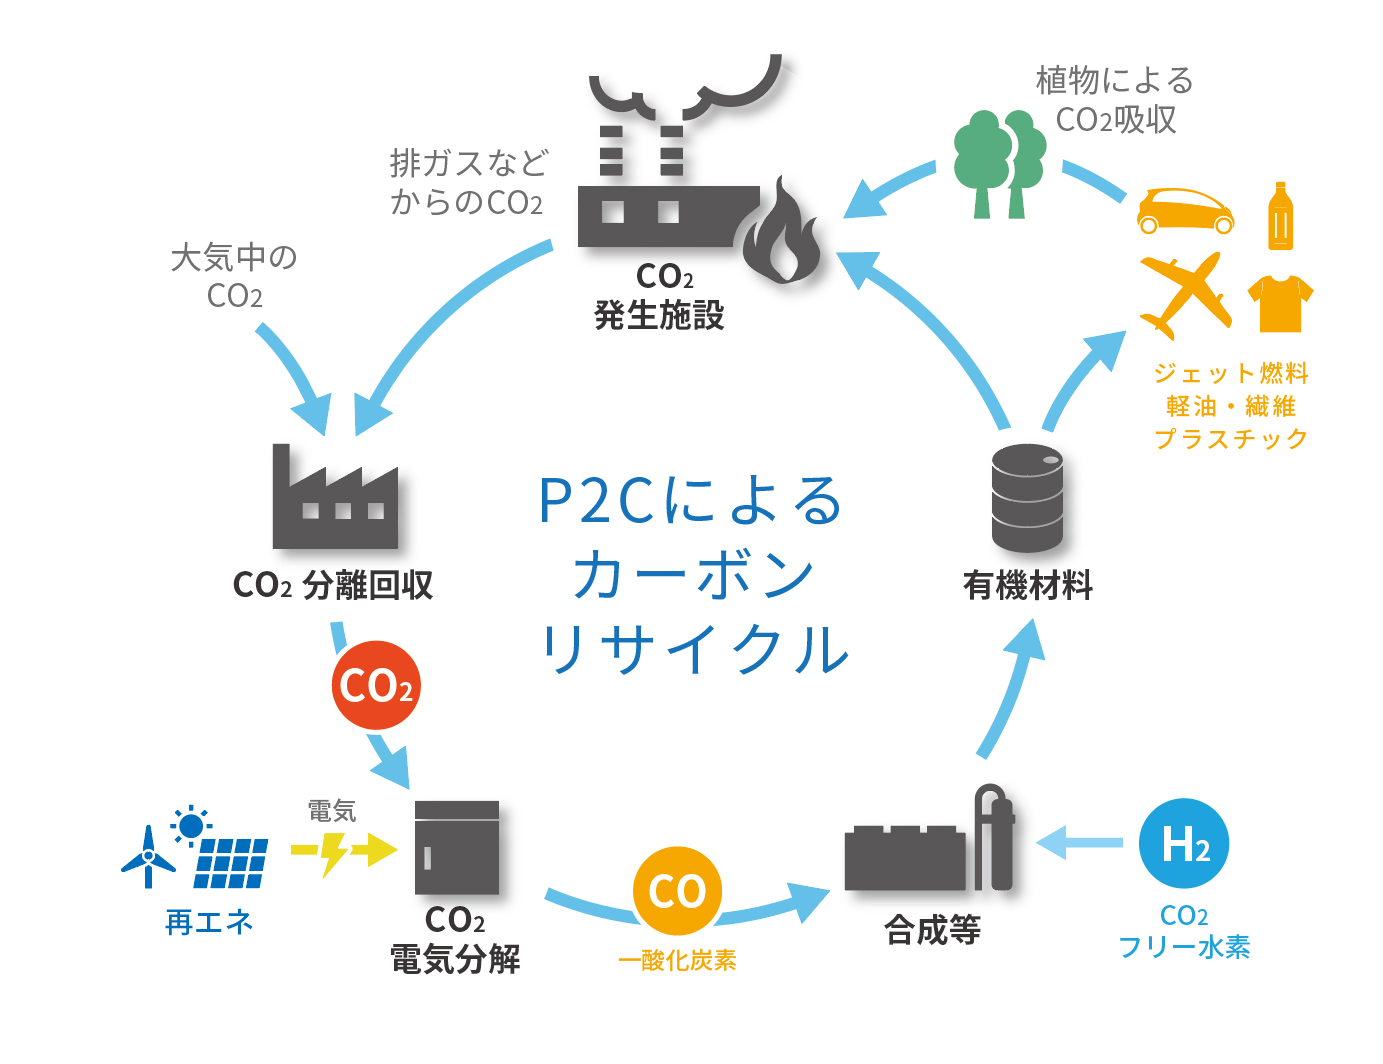 カーボンリサイクルのビジネスモデル検討を開始 東芝エネルギーシステムズ株式会社のプレスリリース